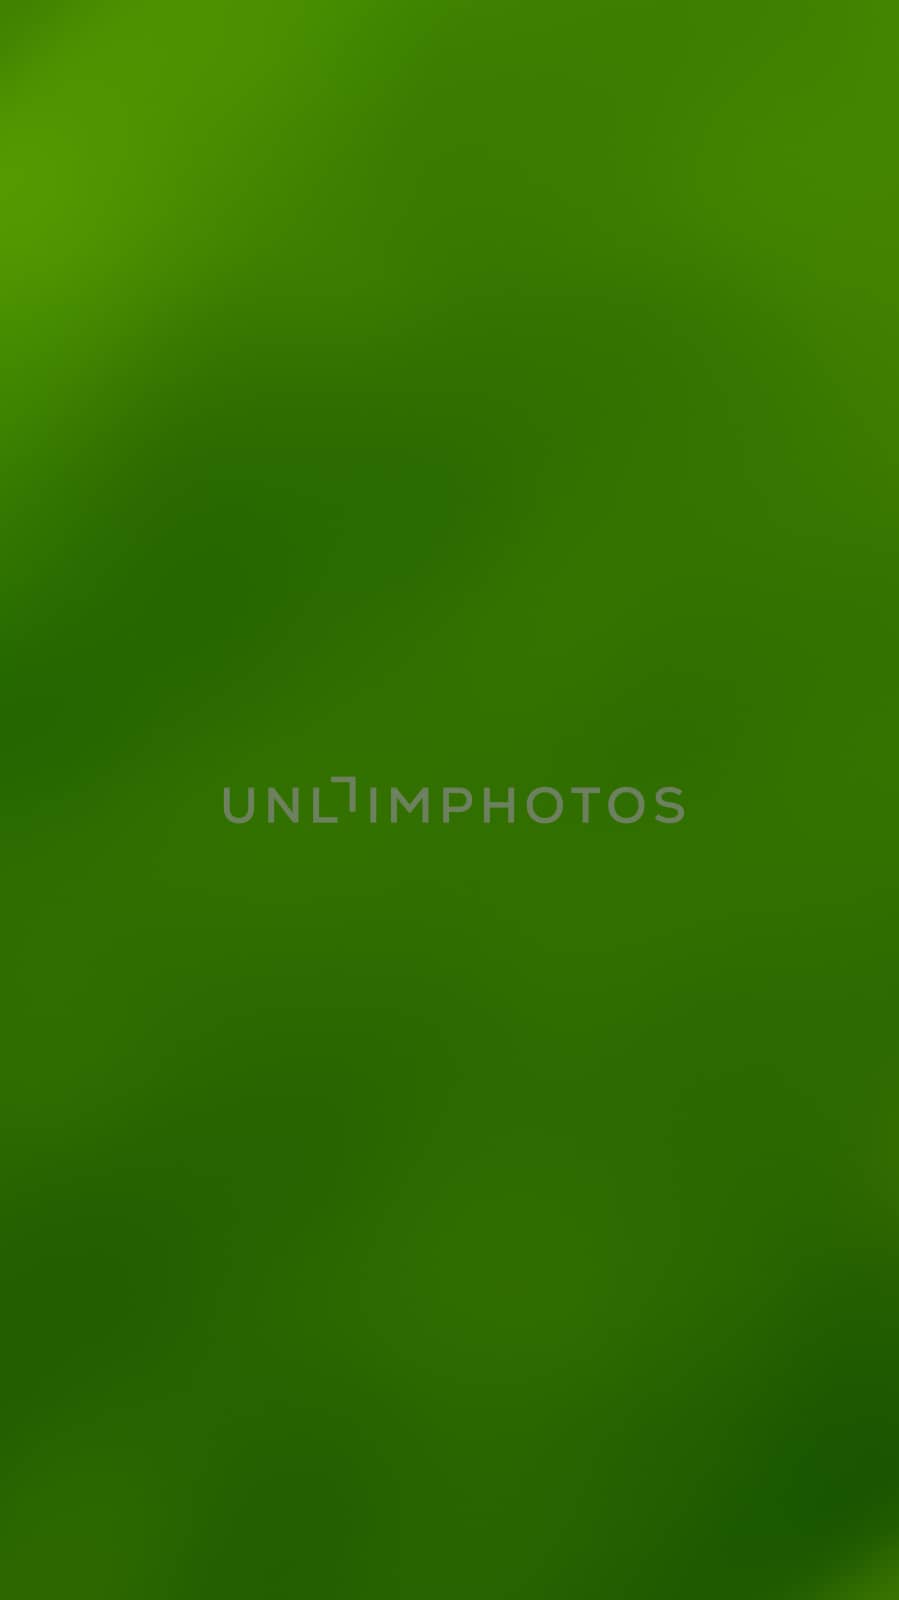 a green natural  blur background